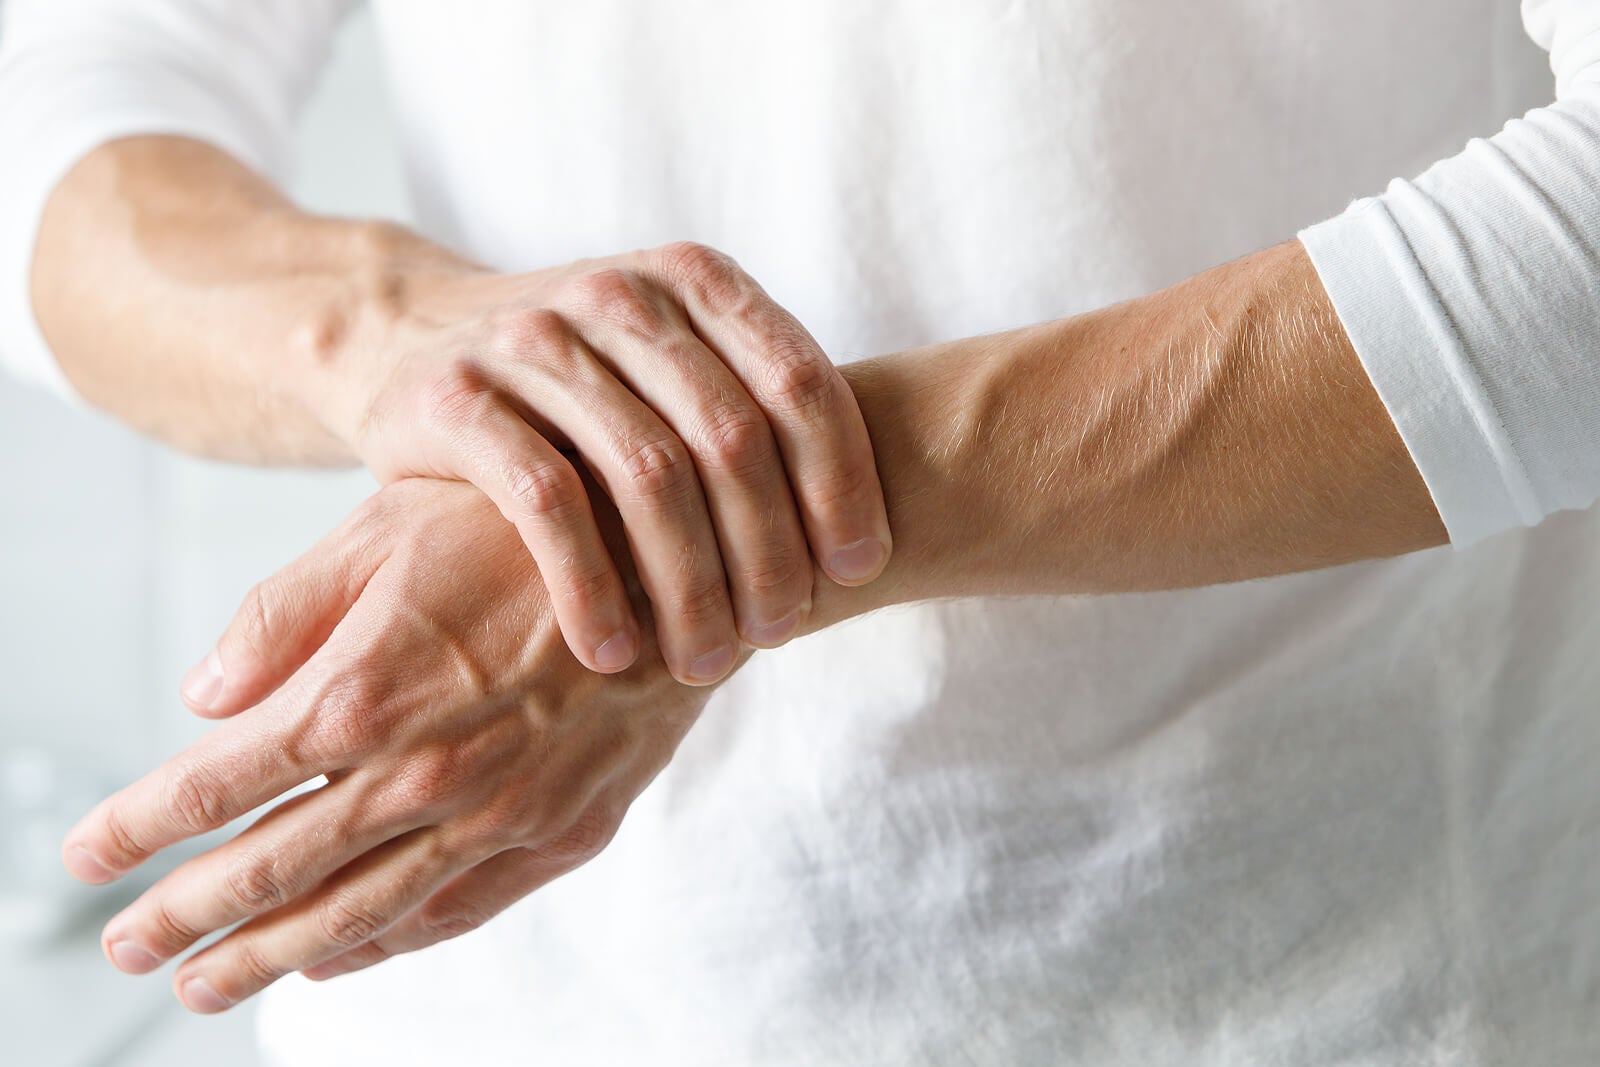 7 para la mano para aliviar dolor de la artritis Mejor con Salud